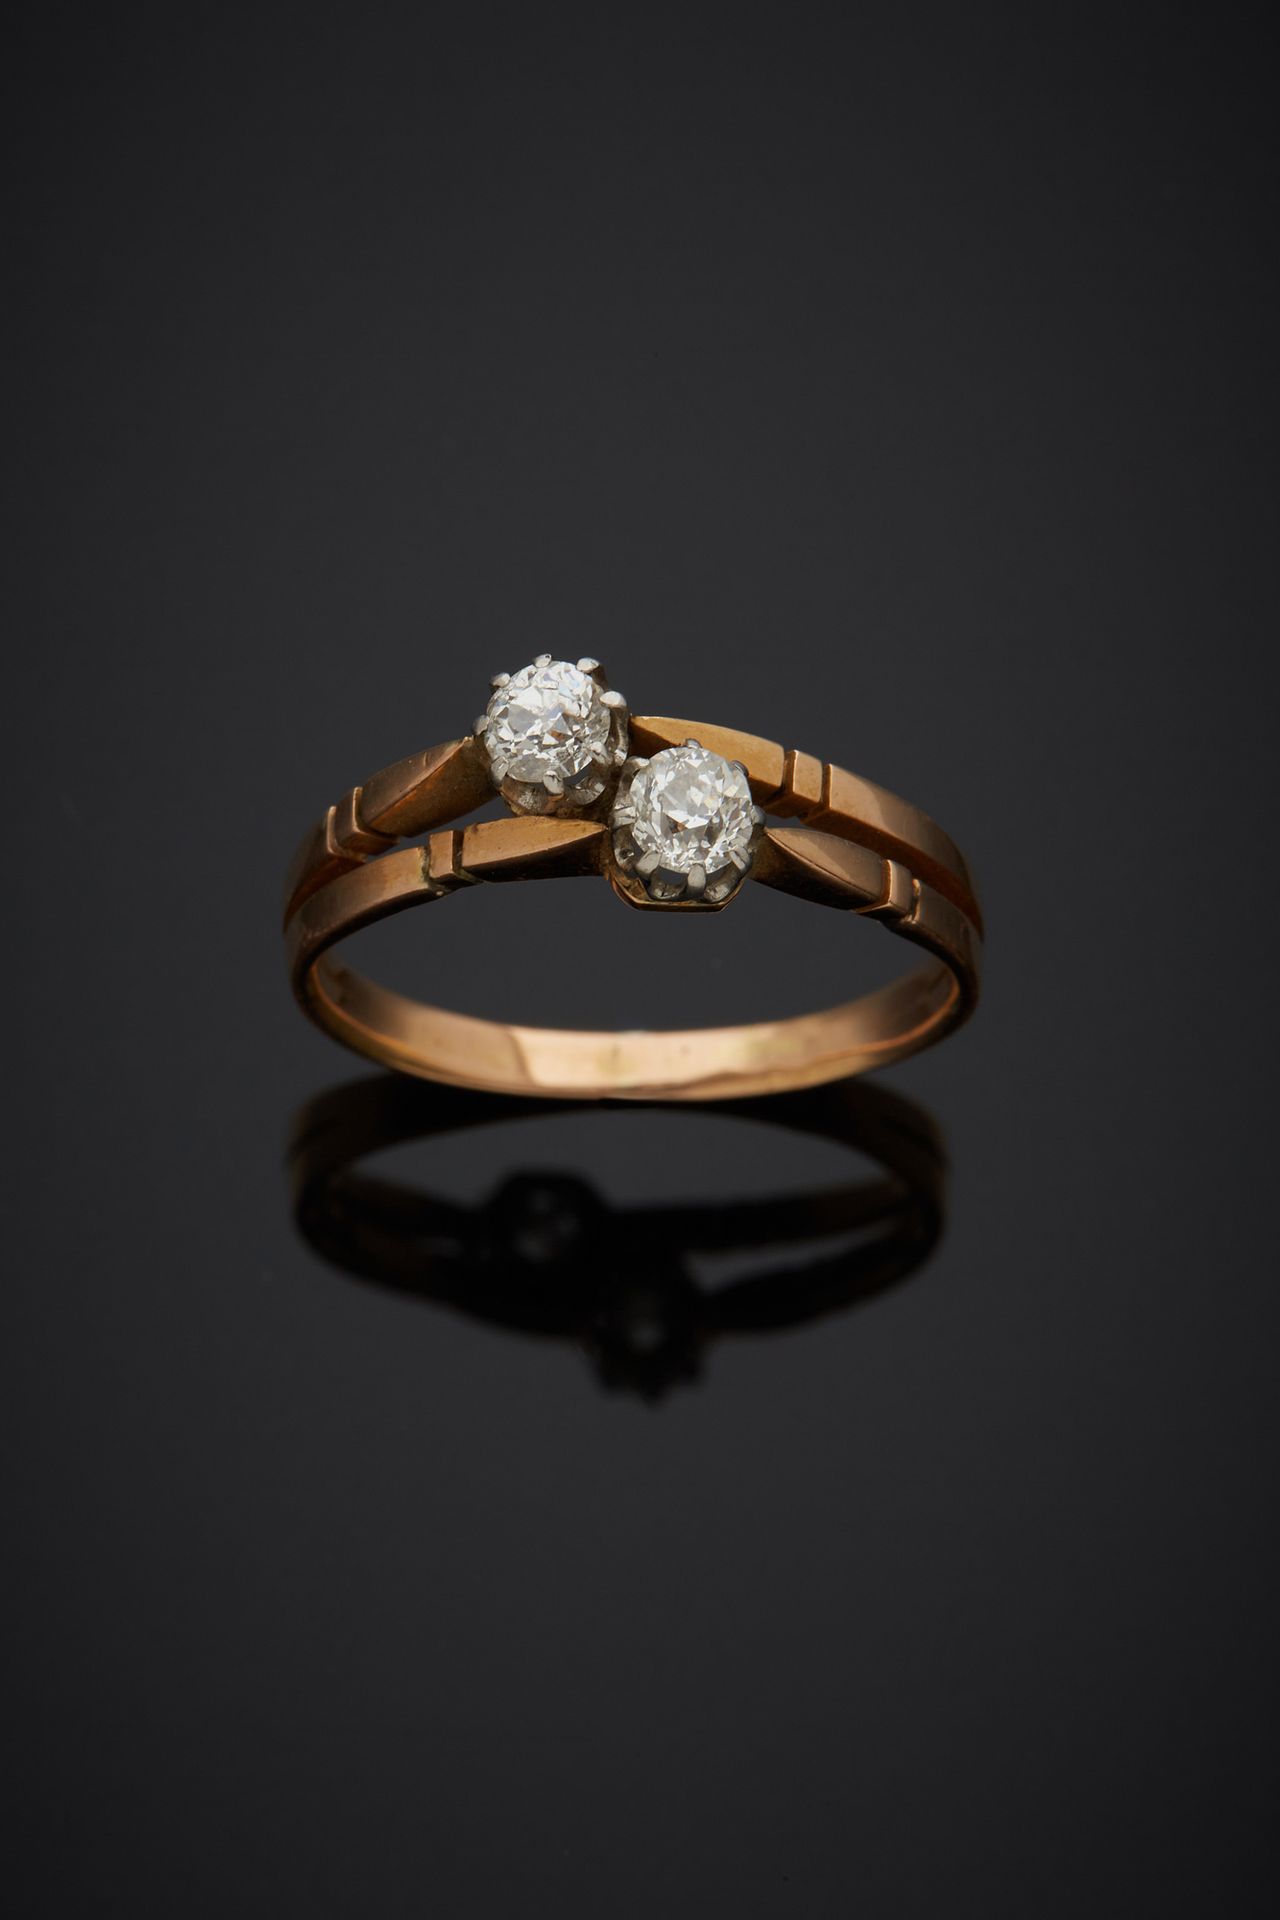 Null 一枚18K黄金750‰和铂金850‰的十字架戒指，镶嵌着两颗老式切割钻石。

手指尺寸56 毛重2.60克